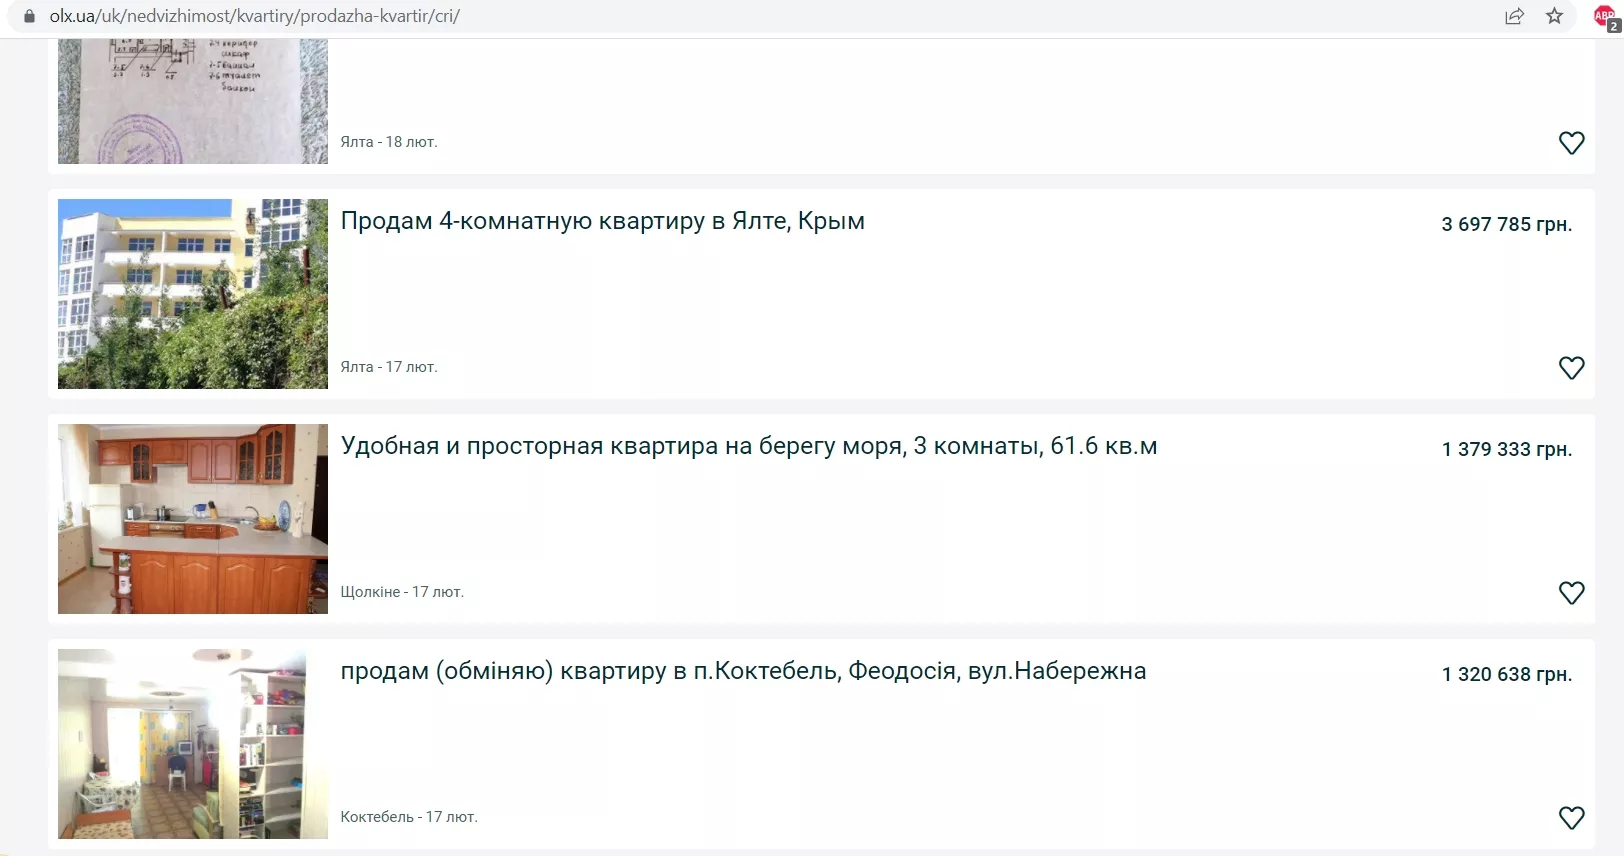 Дехто виставив оголошення і на українських сайтах